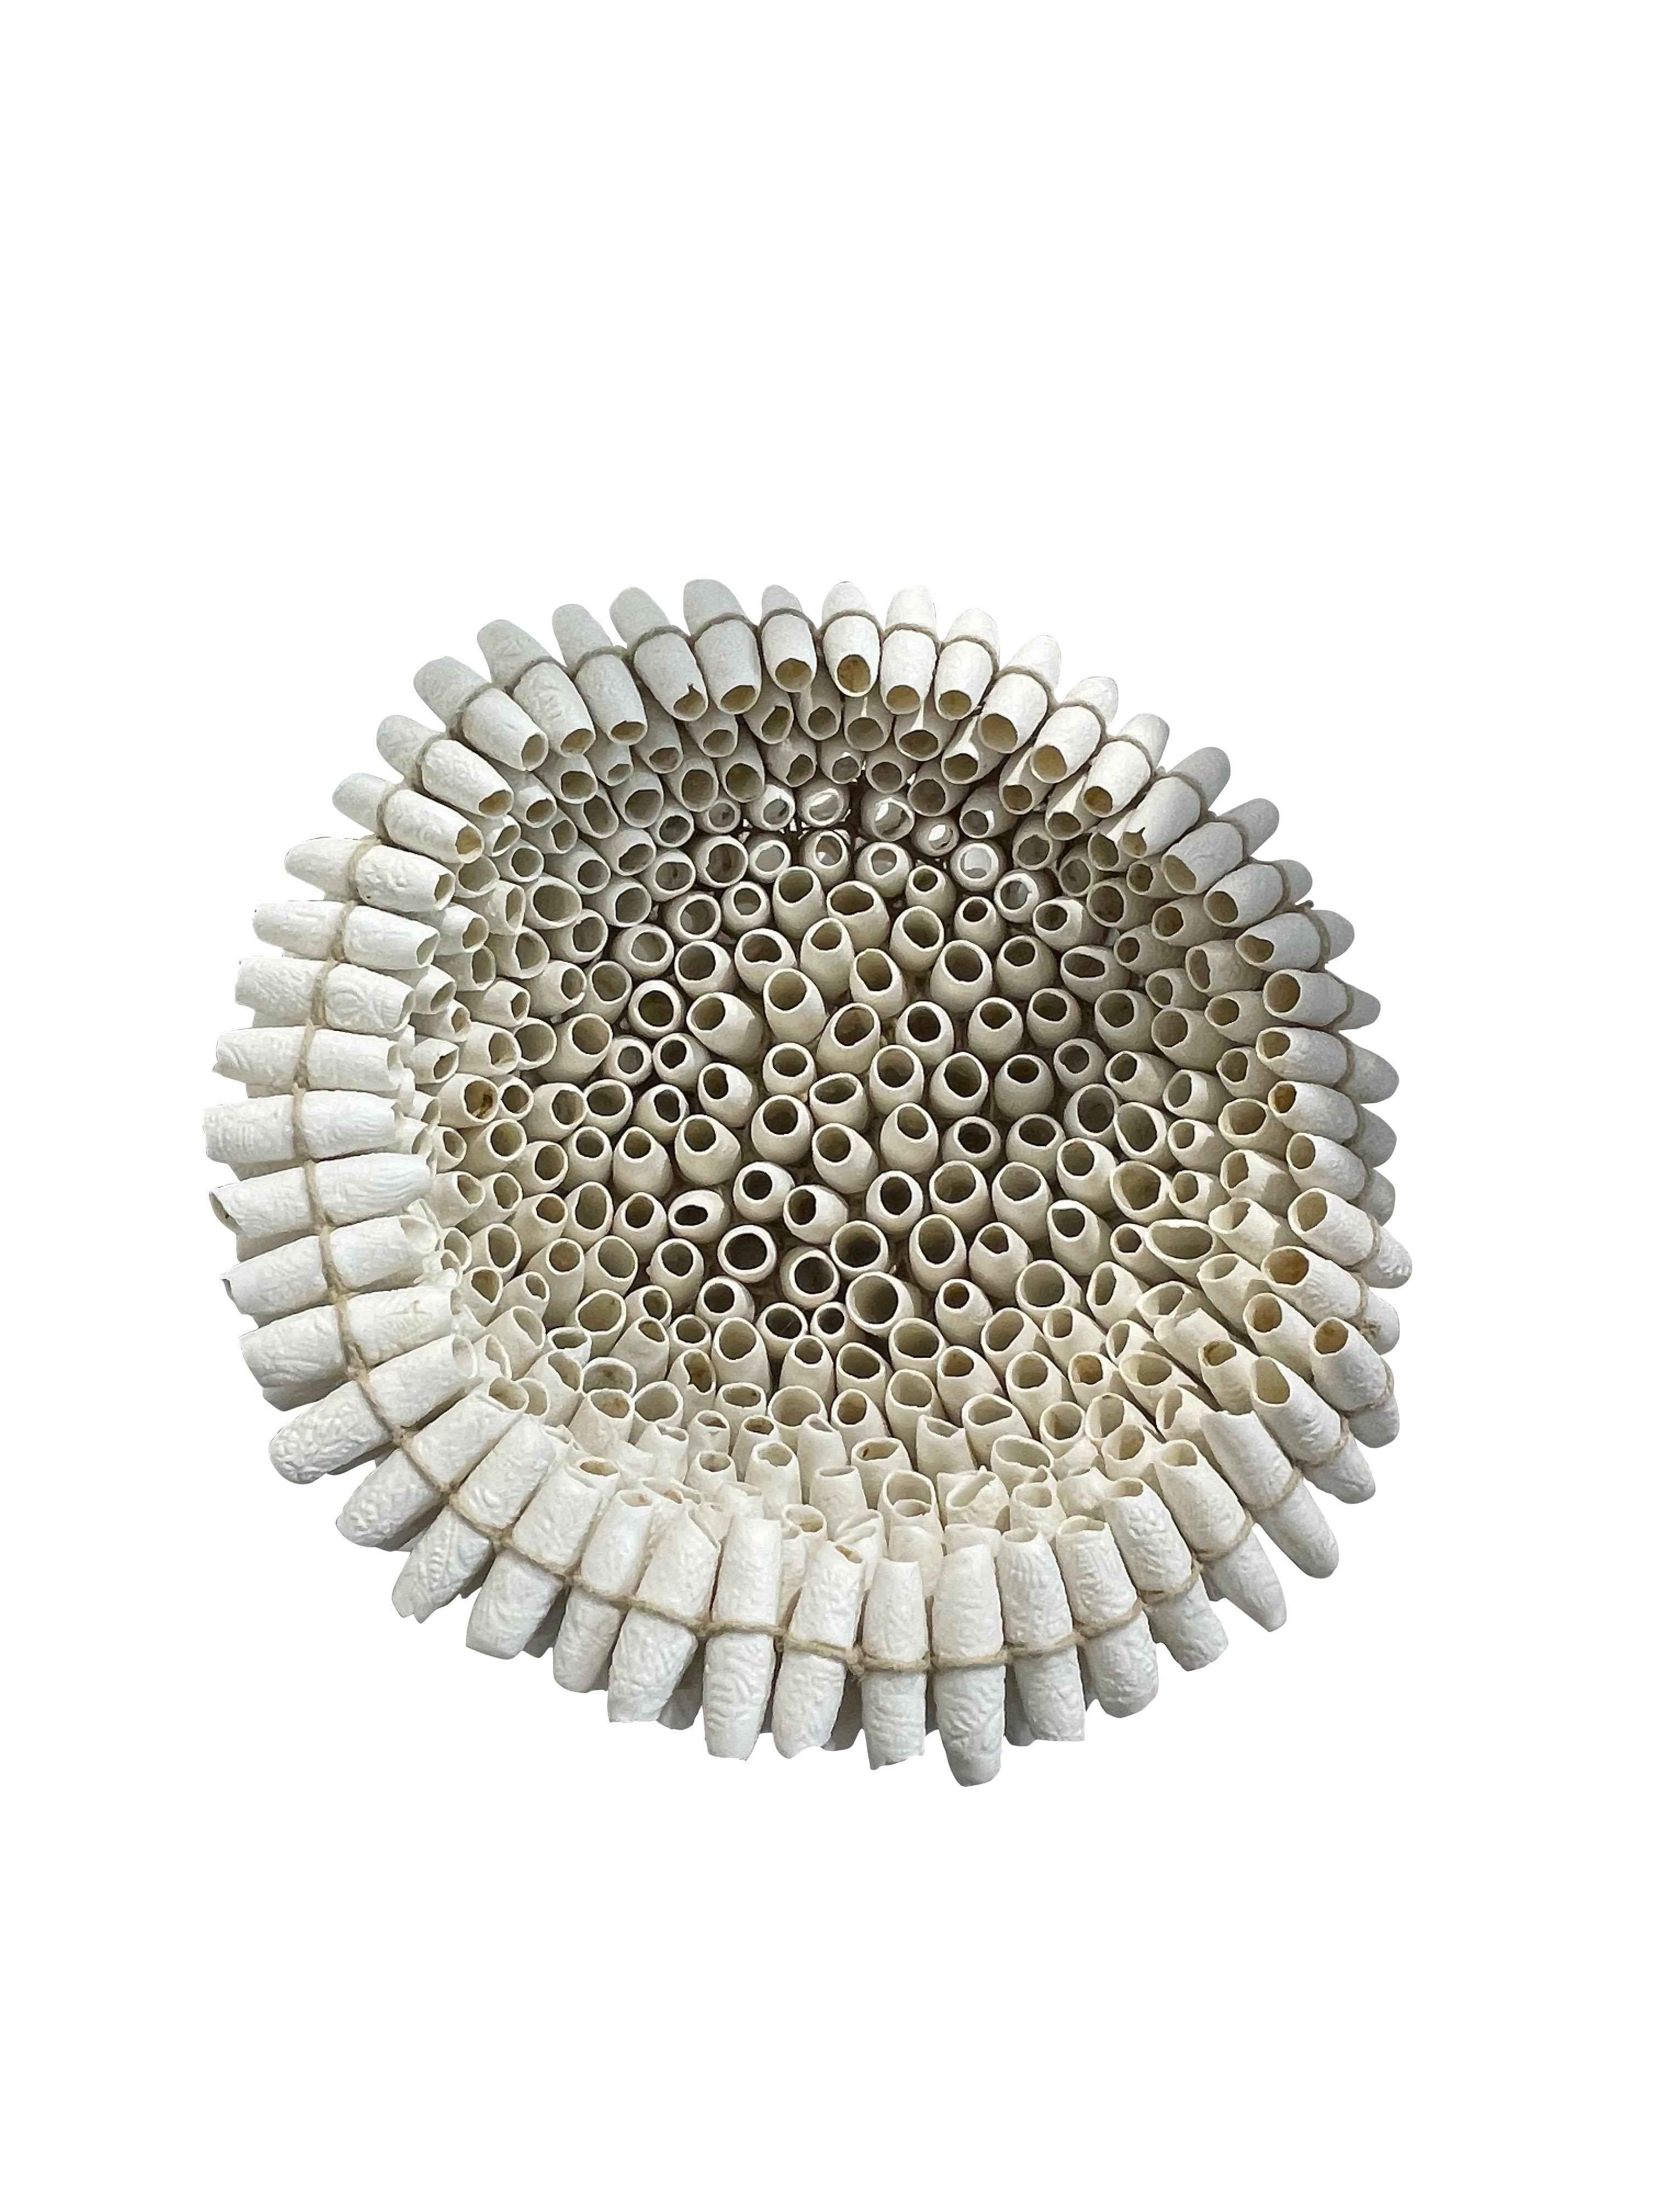 Tubes contemporains en porcelaine fabriqués à la main en France.
Assembler en forme de grand bol.
Unique et très décoratif.
